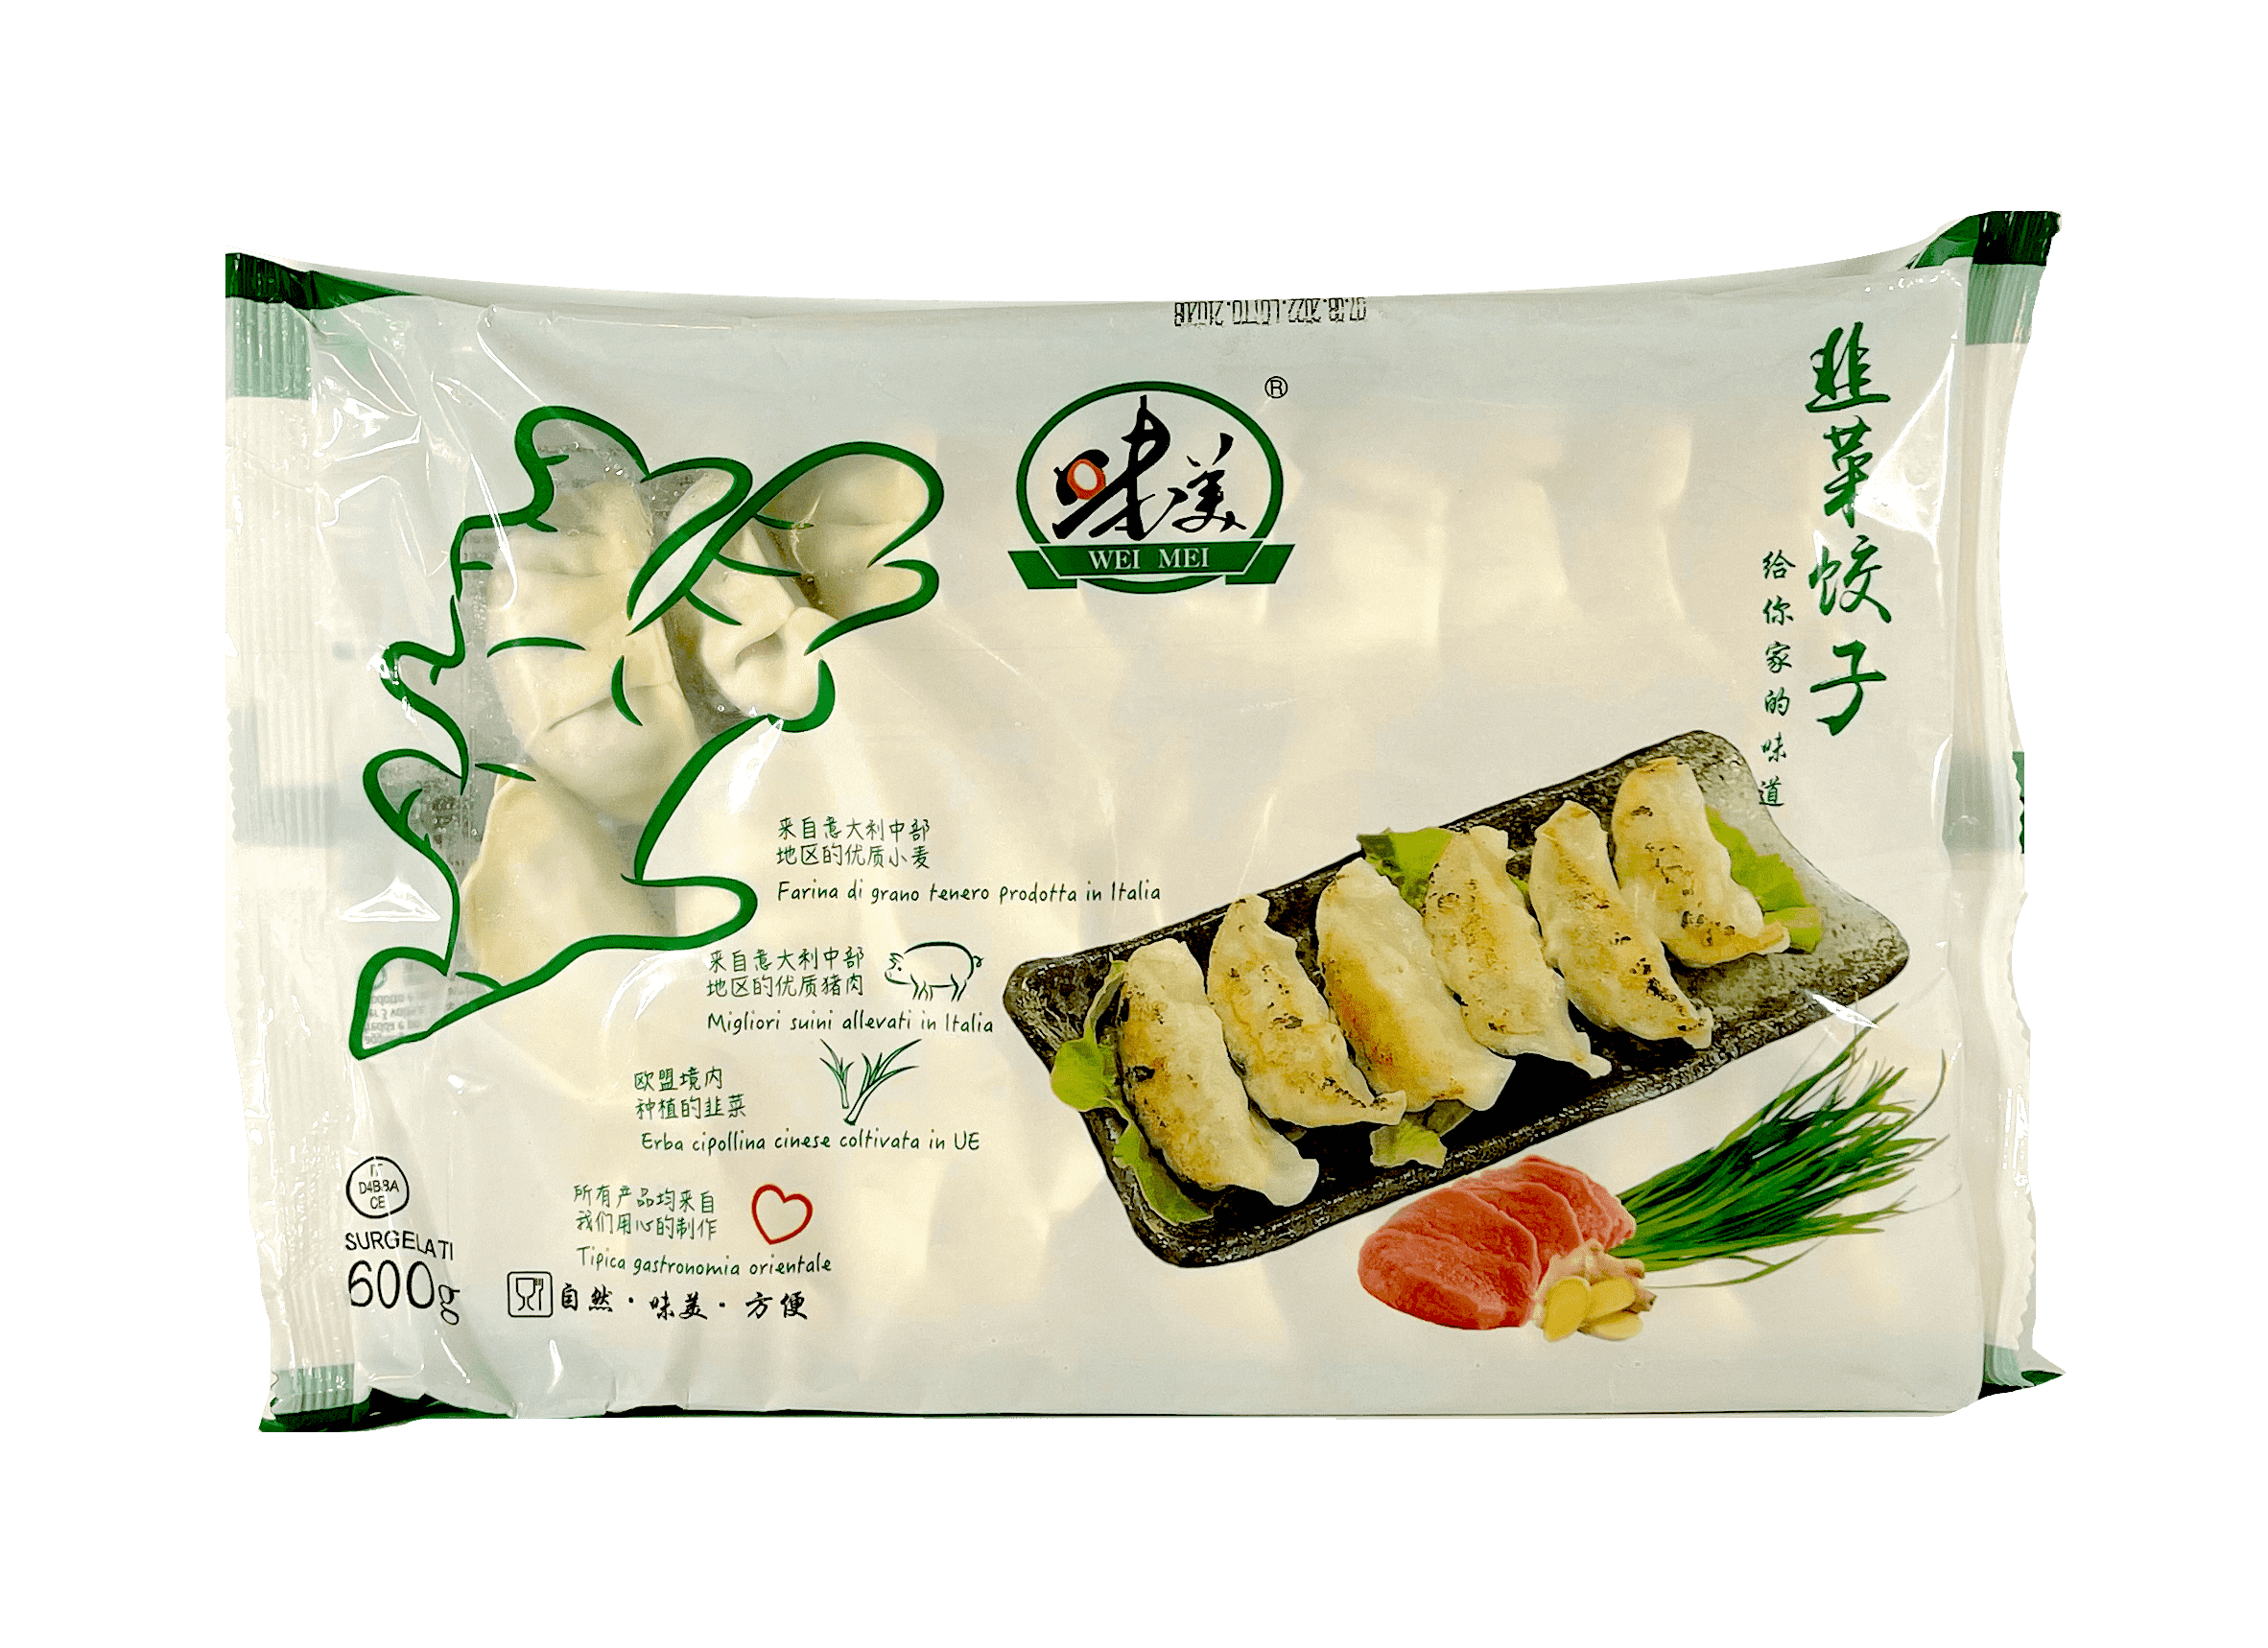 冷冻 猪肉韭菜饺子 600g 味美 中国